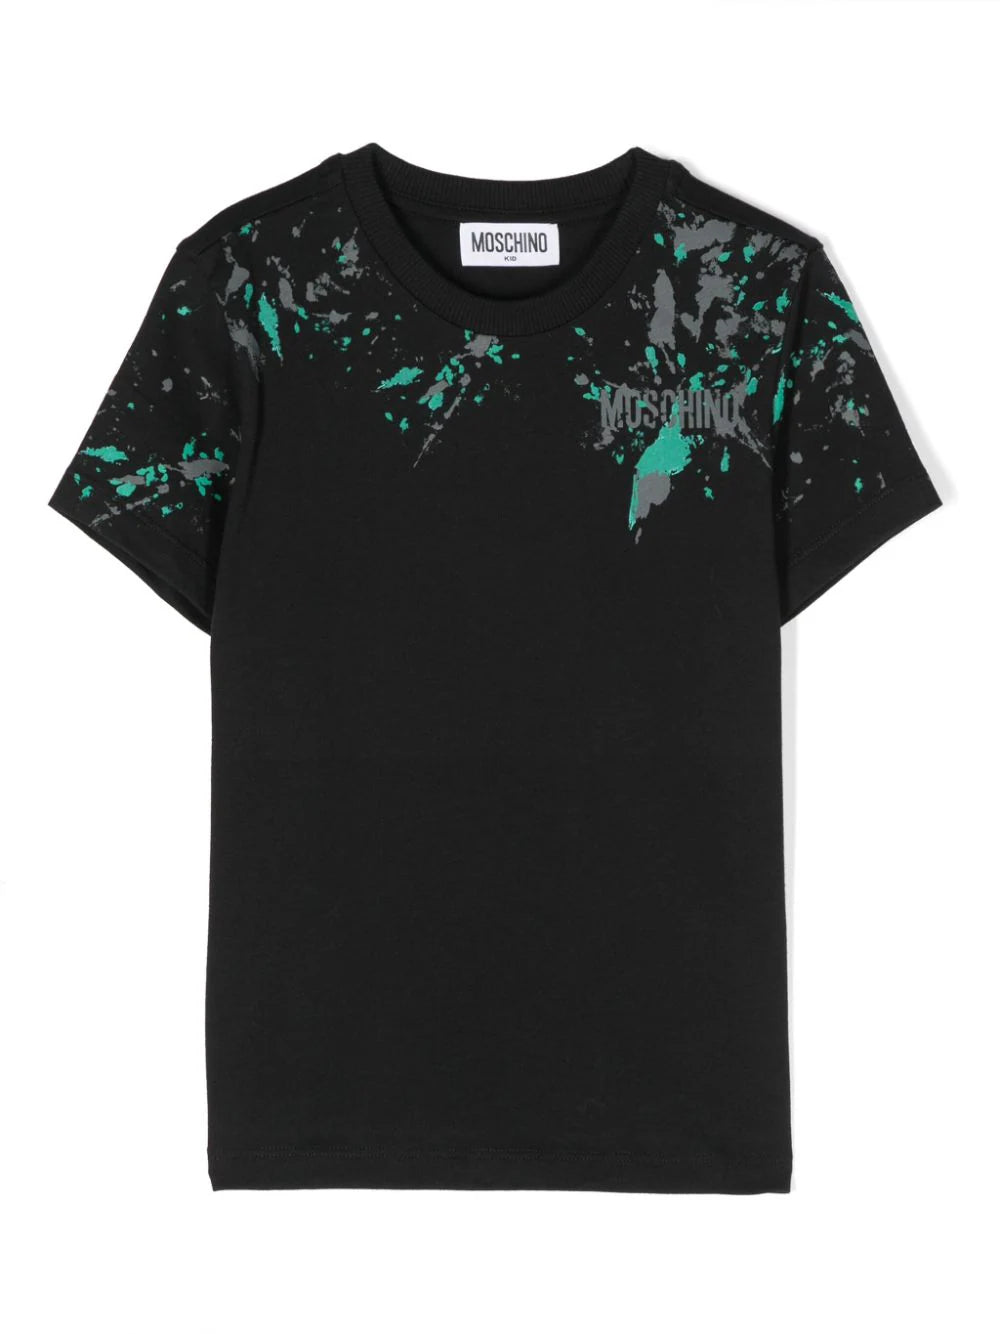 Moschino Black Paint Splash Logo Tee Shirt